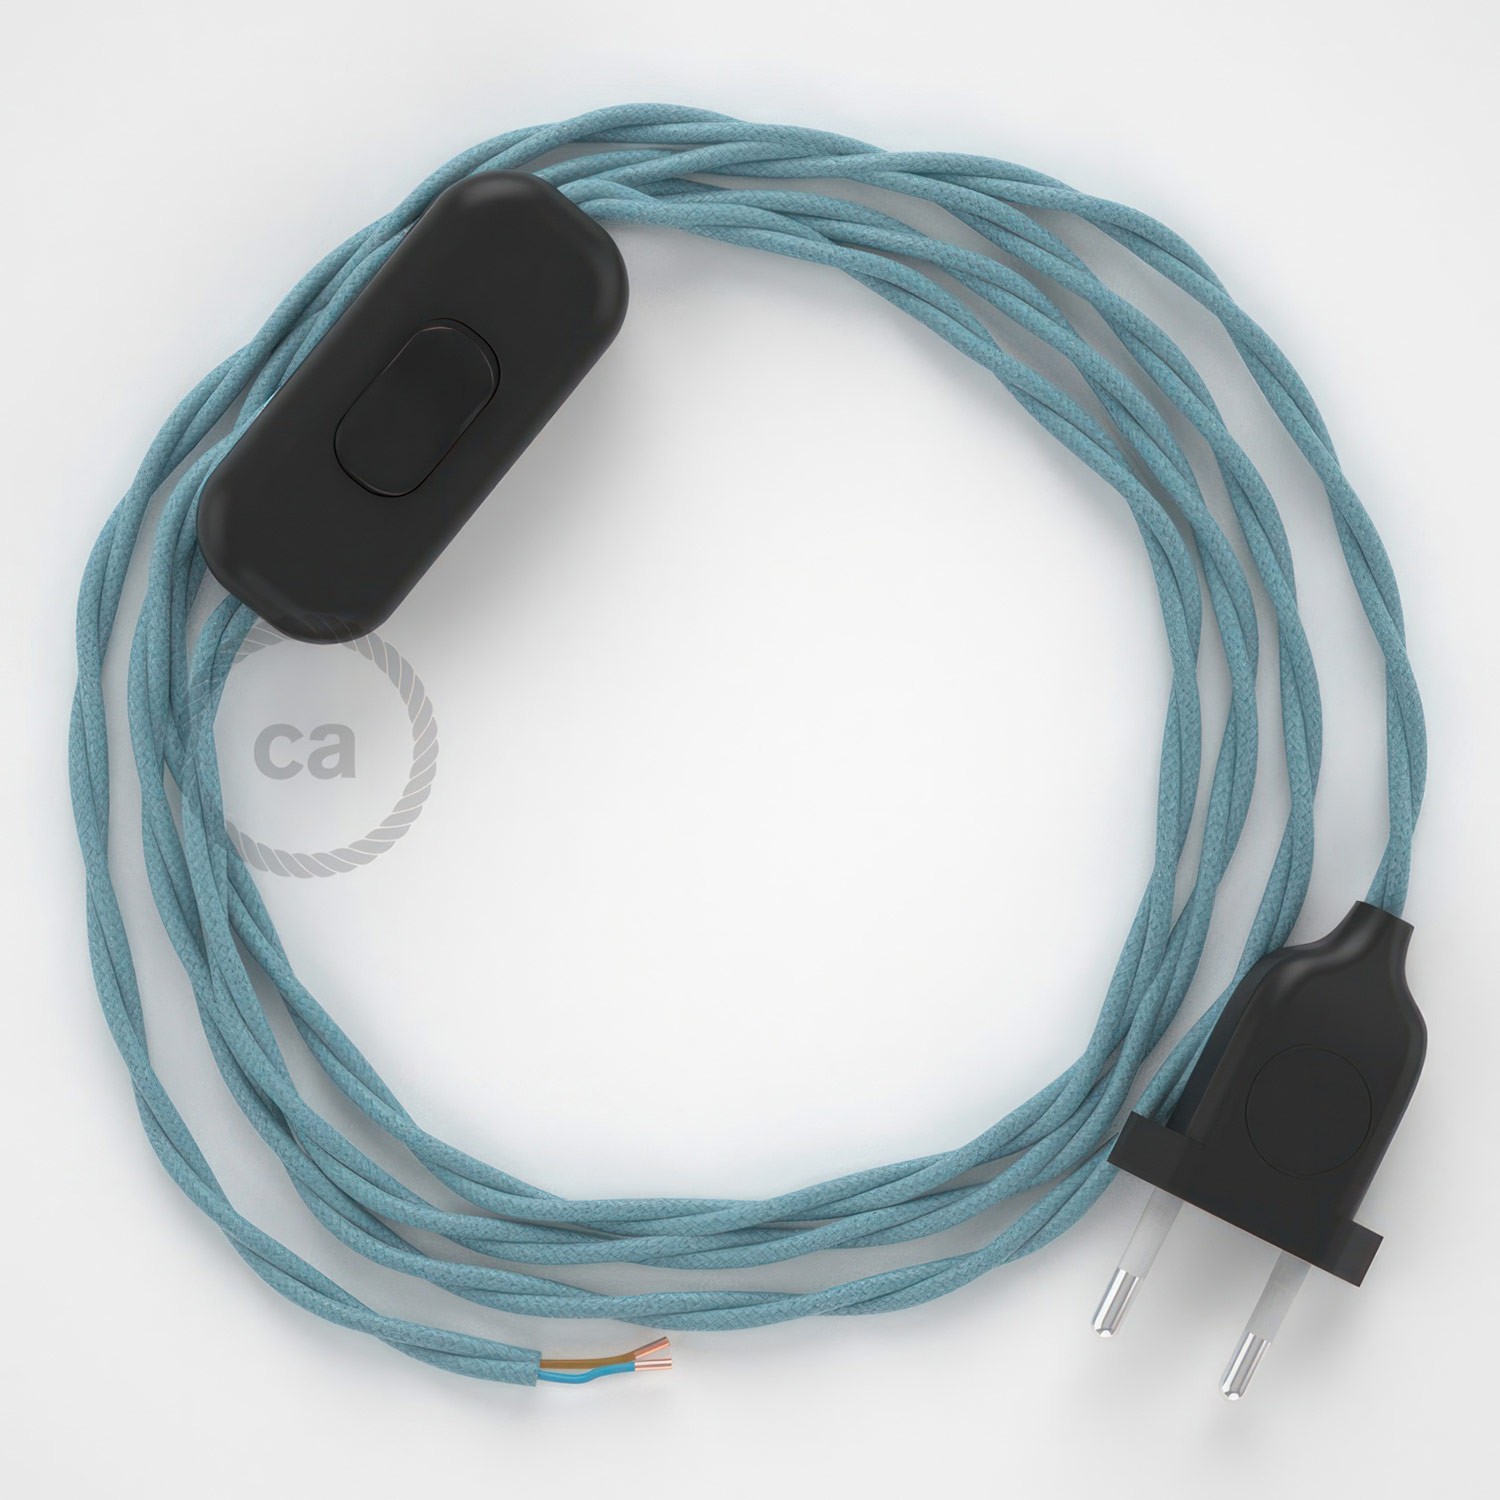 Cableado para lámpara, cable TC53 Algodón Oceano 1,8m. Elige tu el color de la clavija y del interruptor!